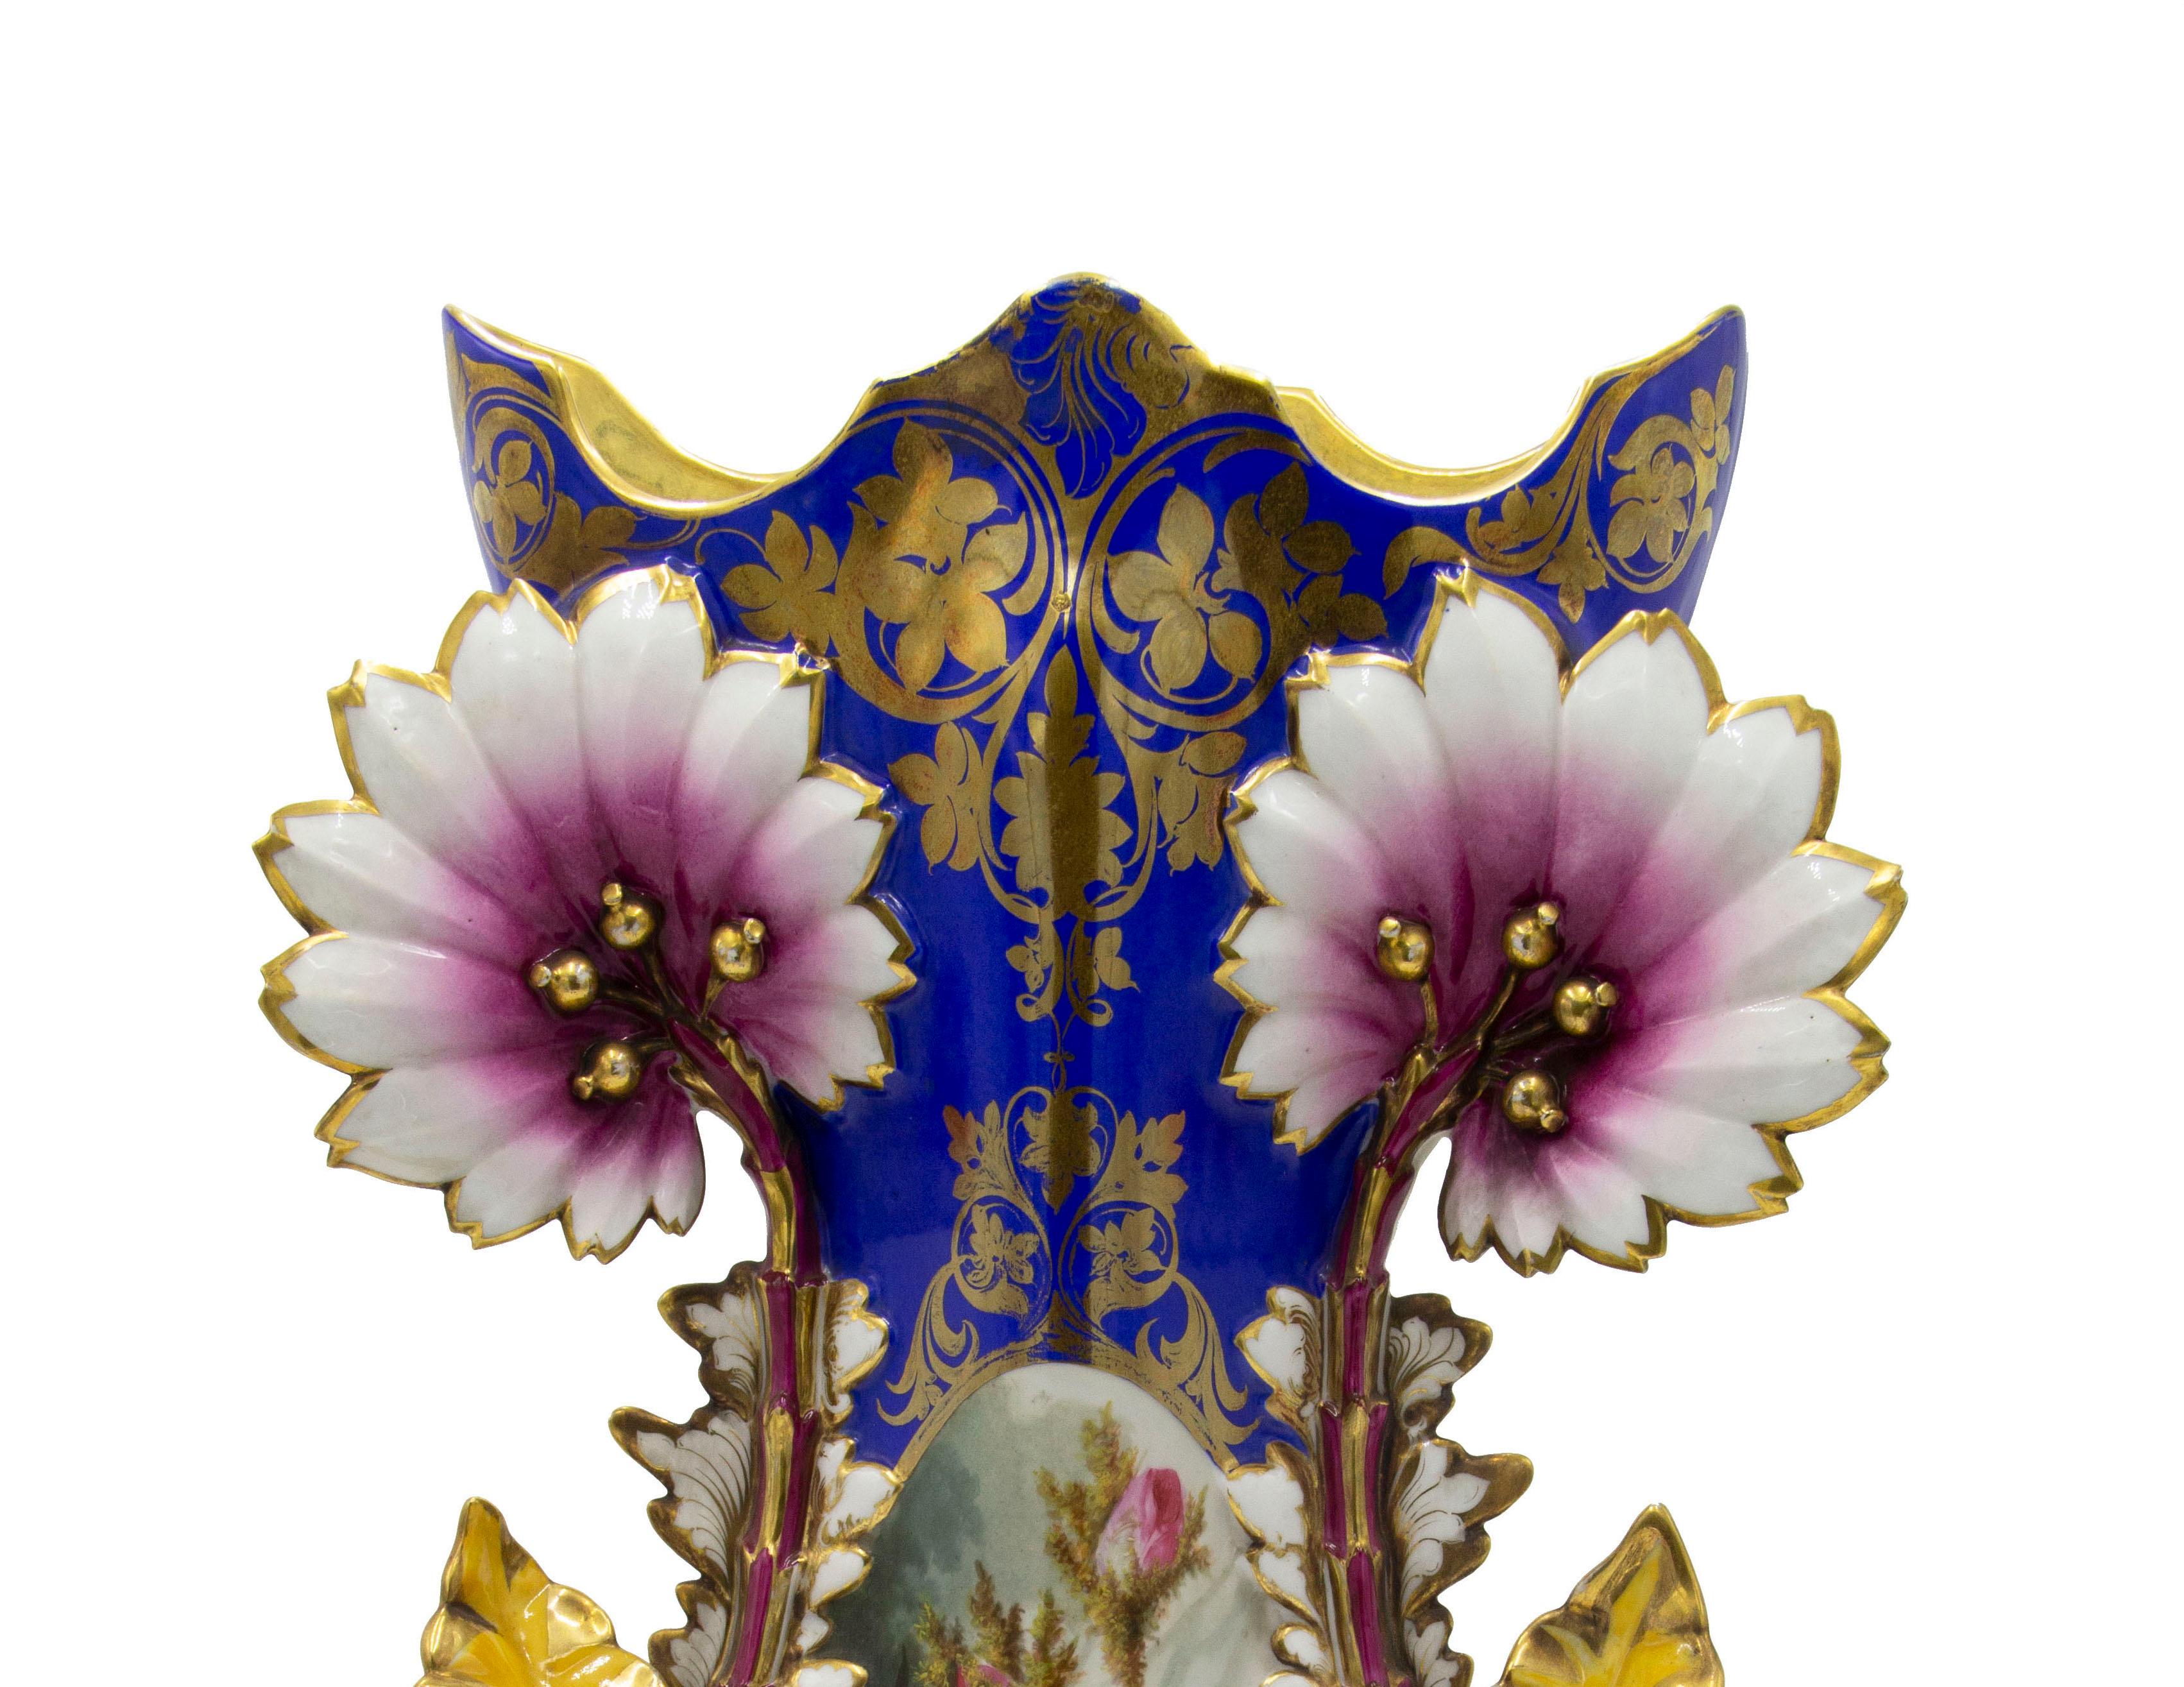 Paire de vases en porcelaine de Chelsea de l'époque victorienne anglaise, avec des garnitures bleues et dorées, des poignées florales et des fleurs peintes. (PRIX PAR Paire)
